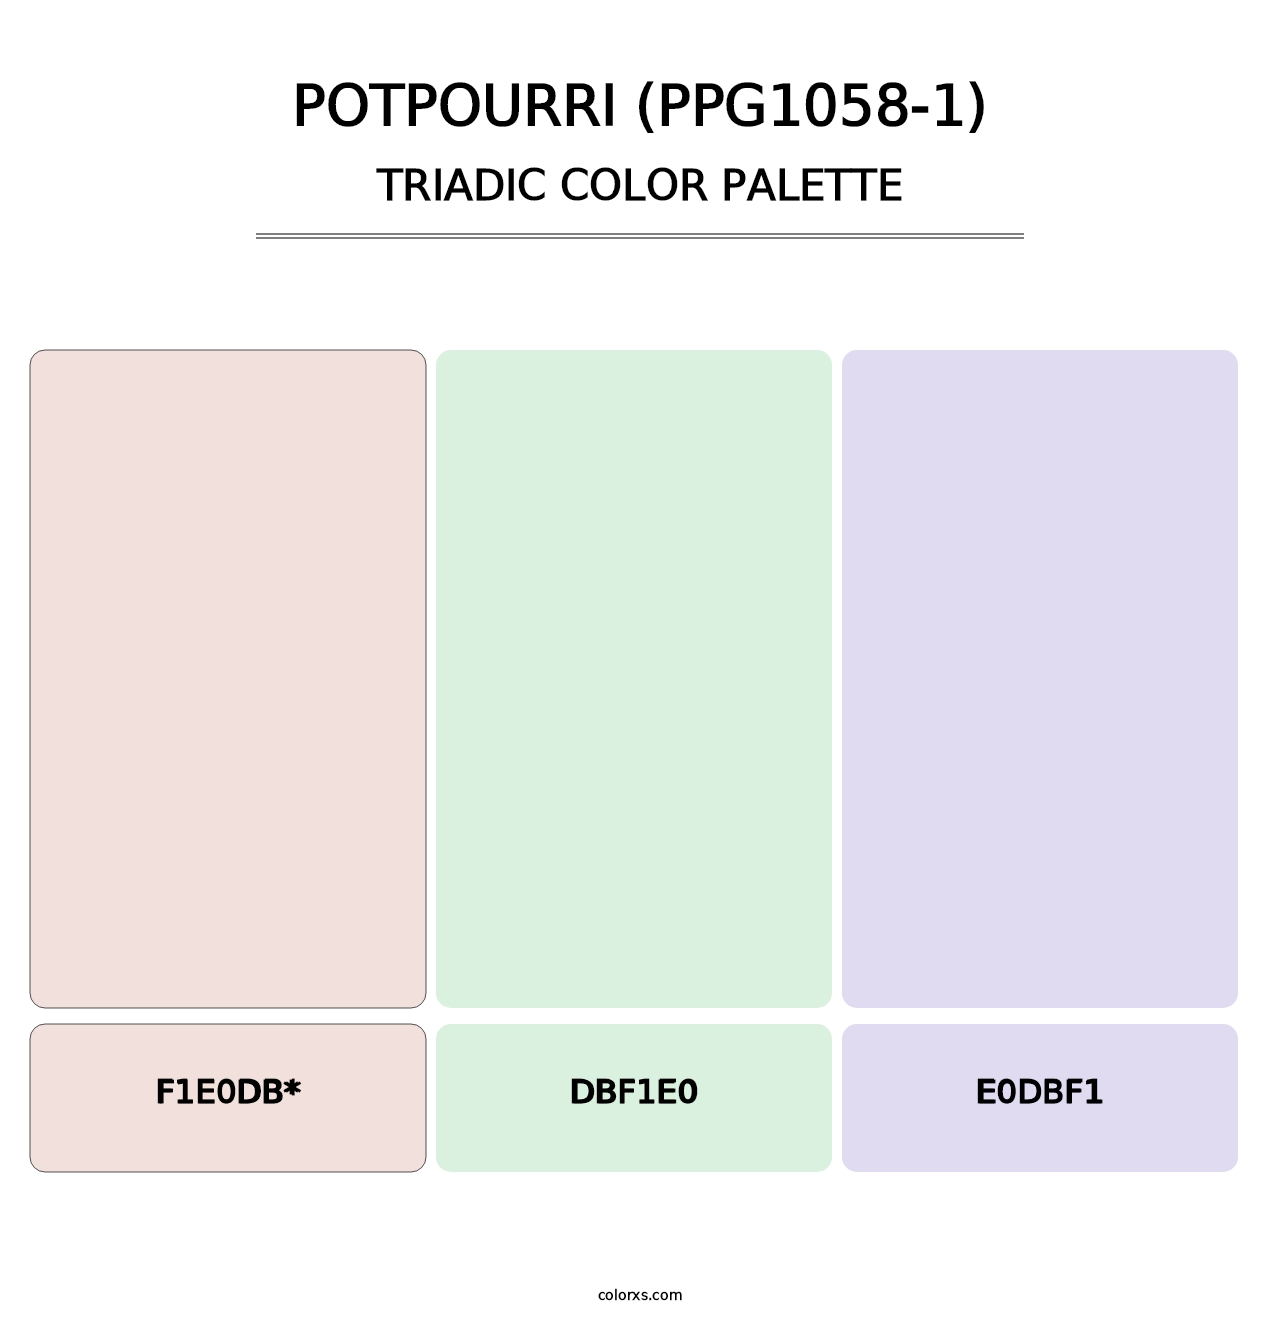 Potpourri (PPG1058-1) - Triadic Color Palette